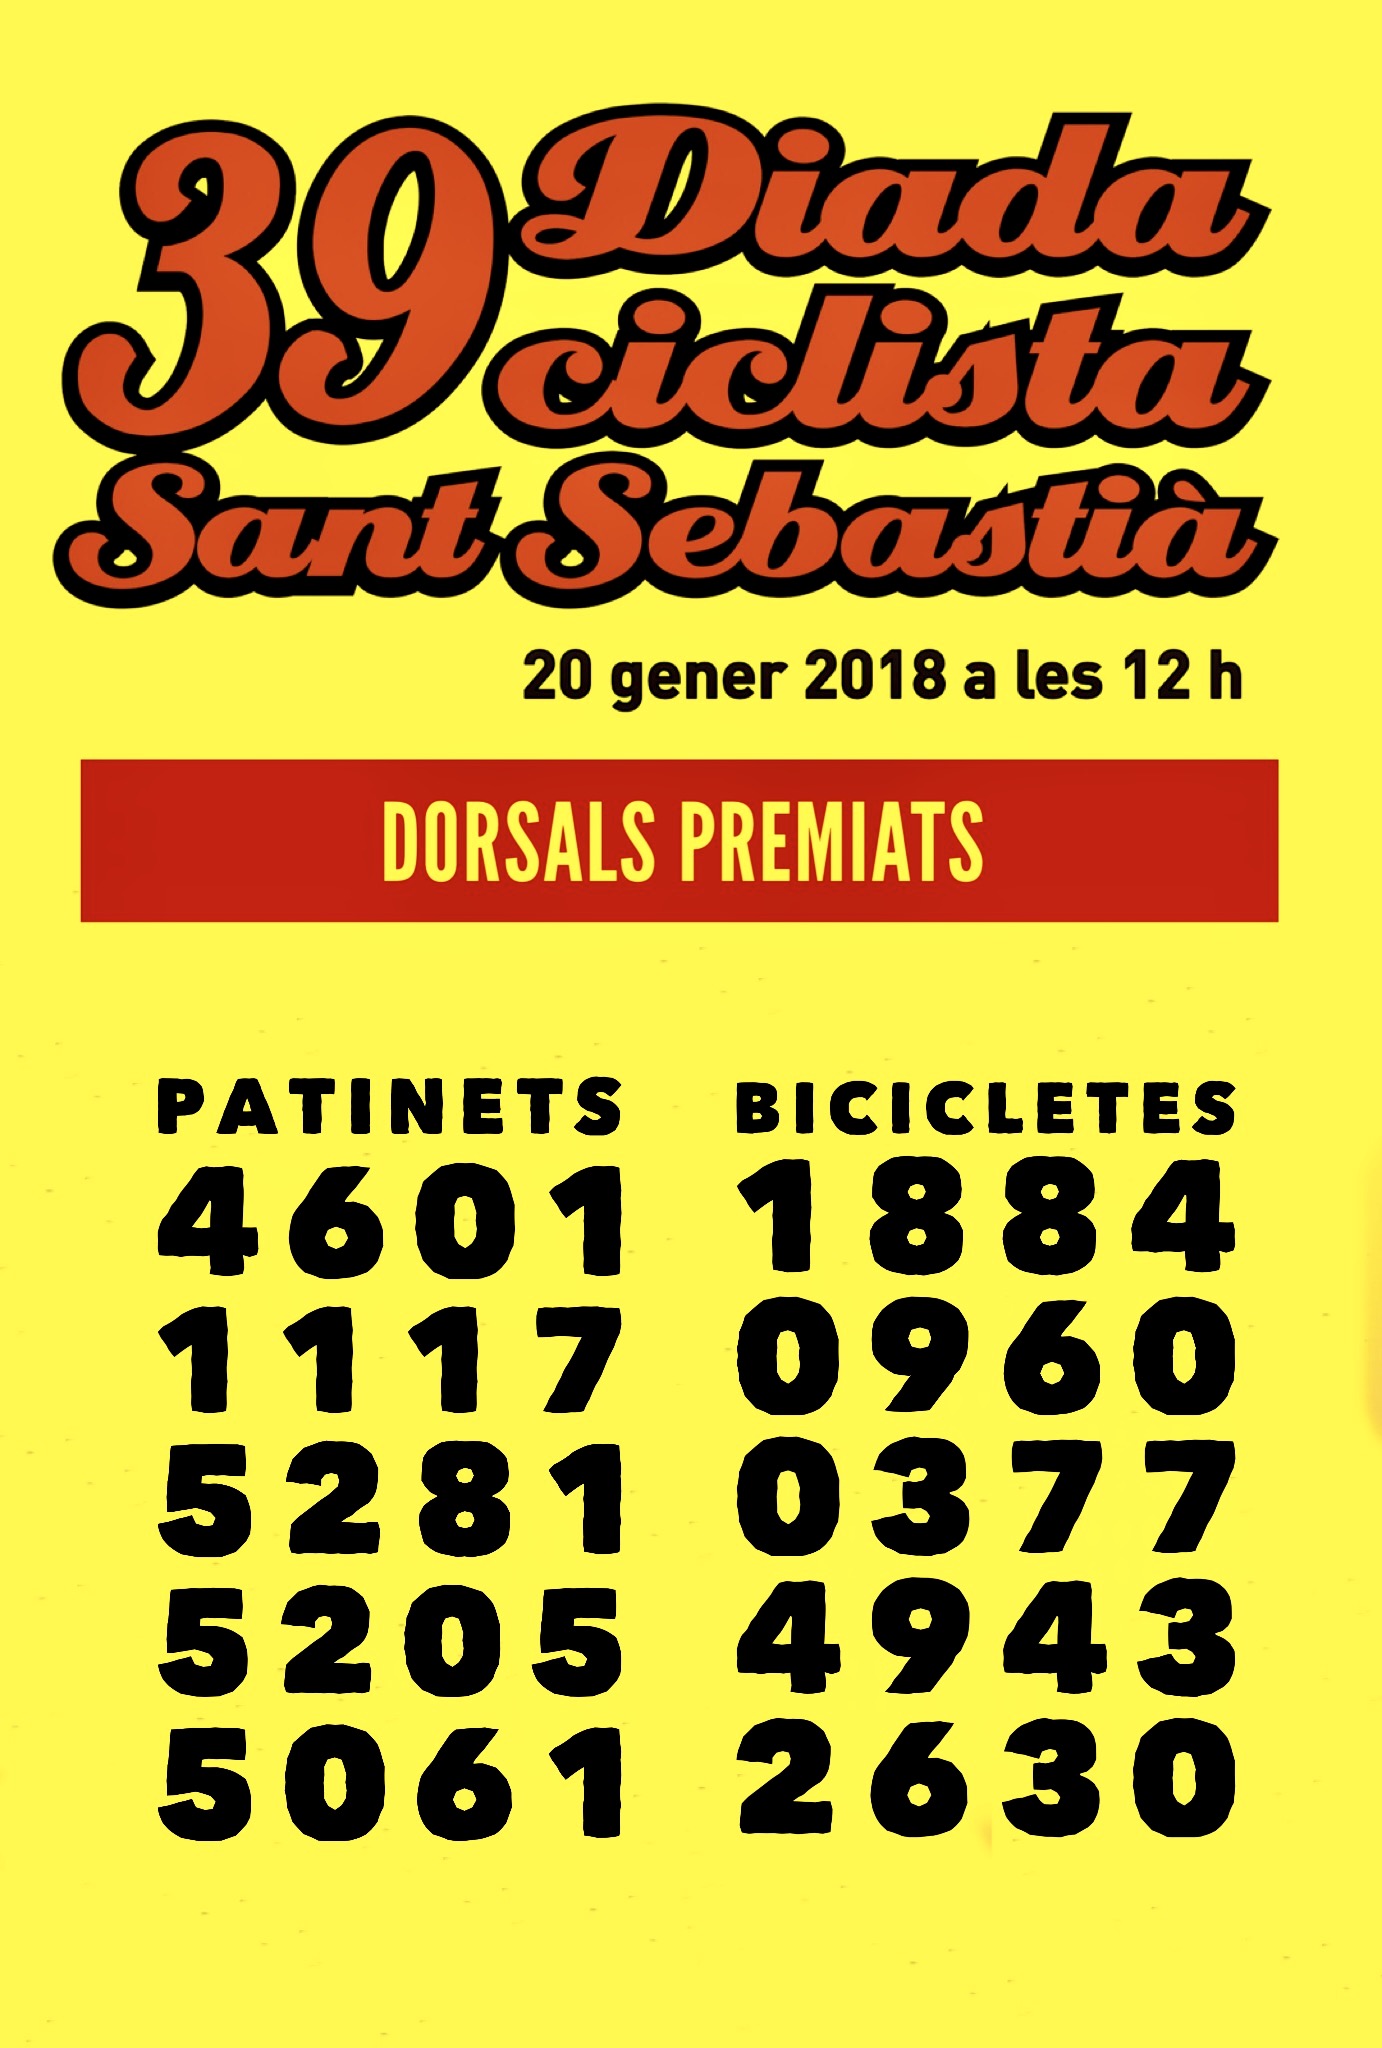 Dorsals guanyadors del sorteig de la 39a Diada Ciclista de Sant Sebastià